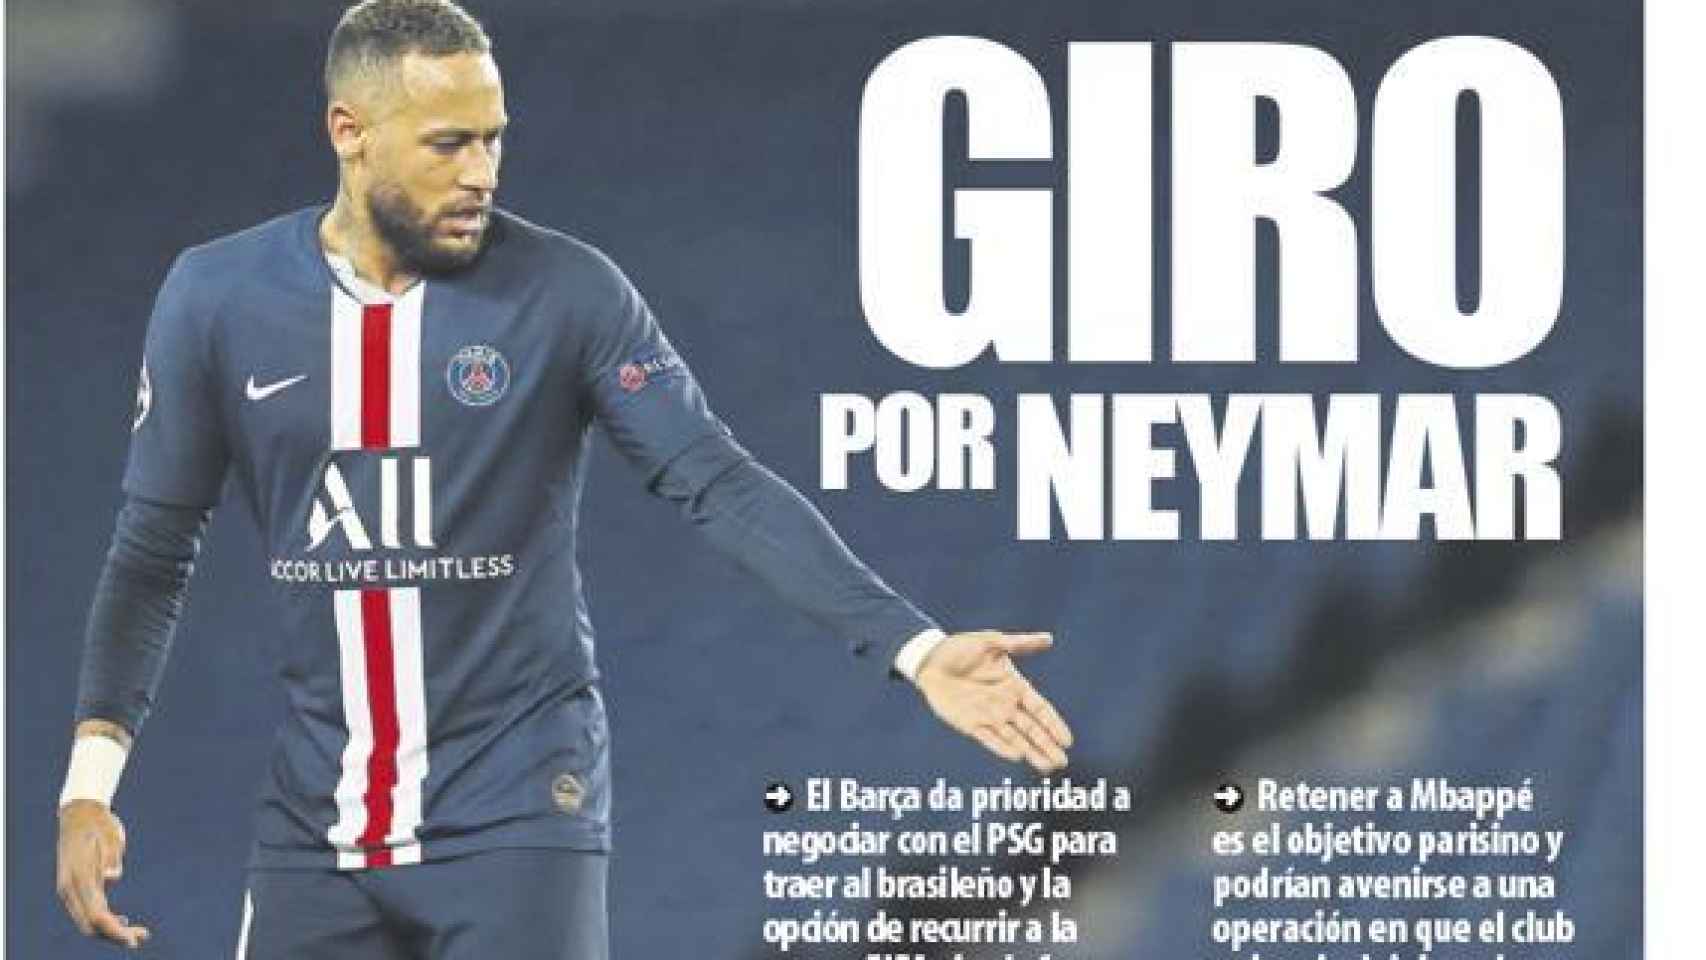 La portada del diario Mundo Deportivo (17/03/2020)